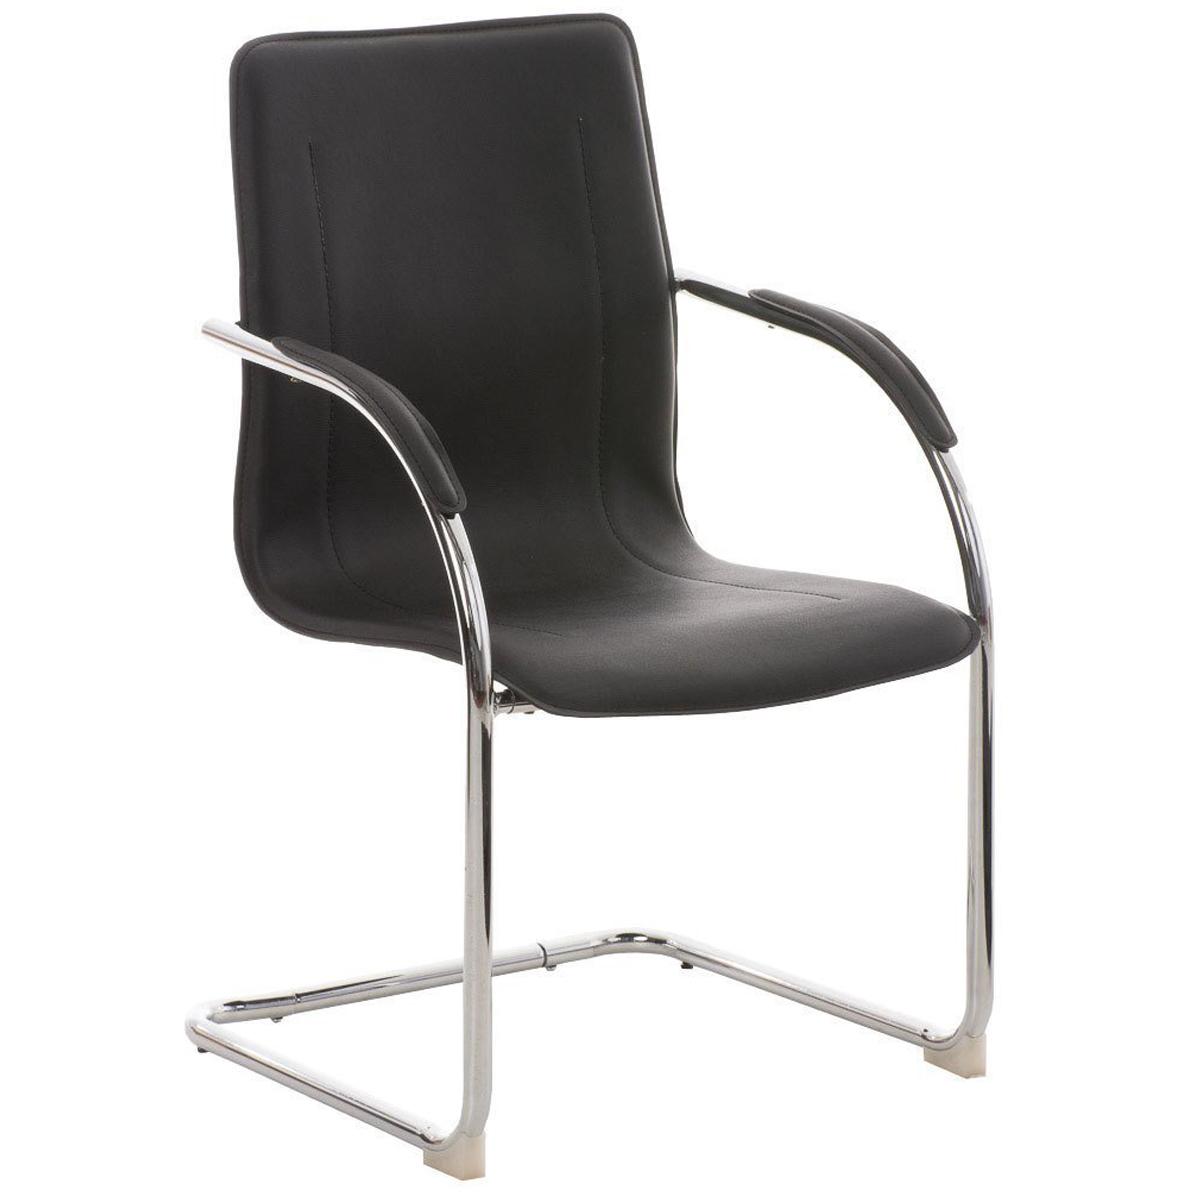 Cadeira de Visita FLAP, Estrutura Metálica, Design Moderno, Em Pele, Cor Preto